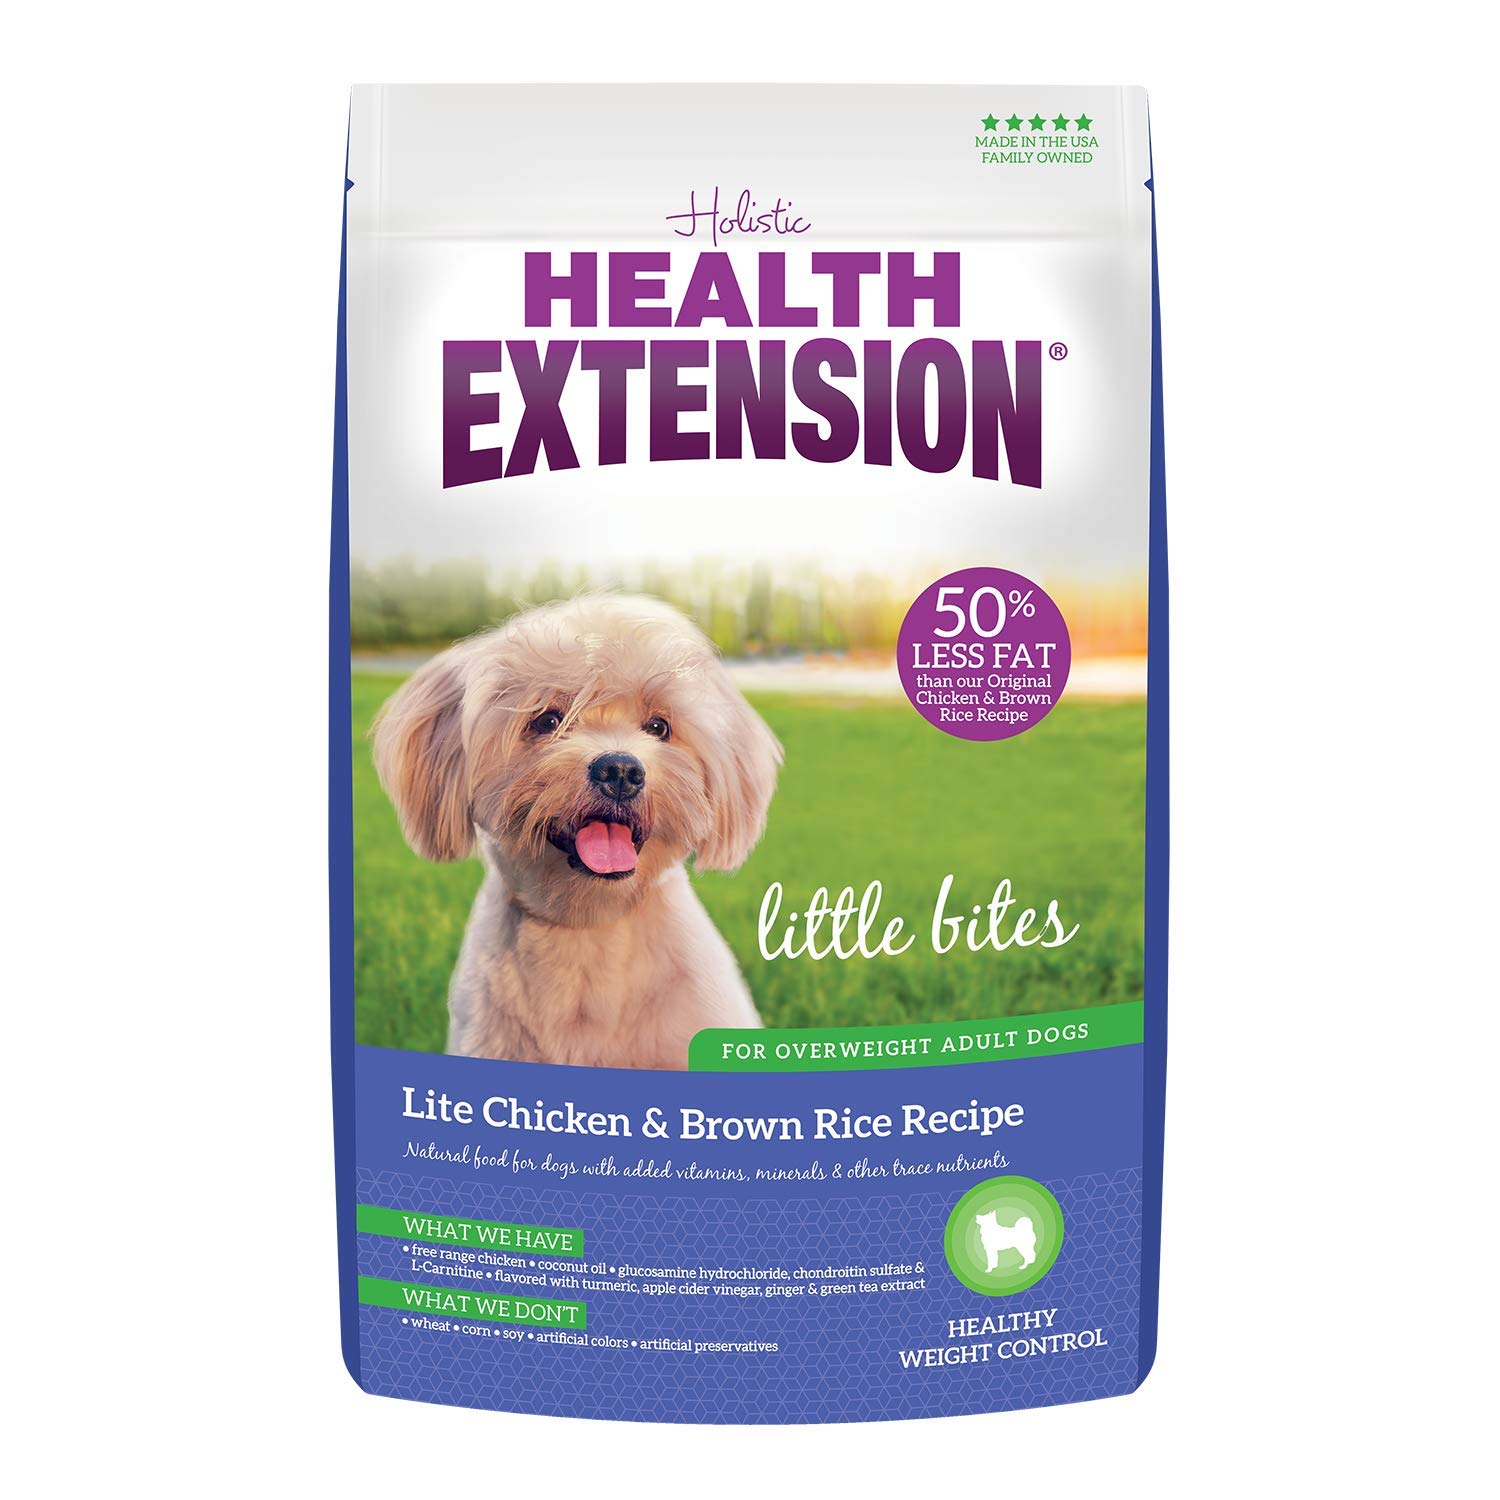  Health extension Little Bites ドライドッグフード、ビタミンとミネラルを追加した自然食品、ティーカップ、おもちゃ、小型犬、チキンと玄米のレシピに最適...